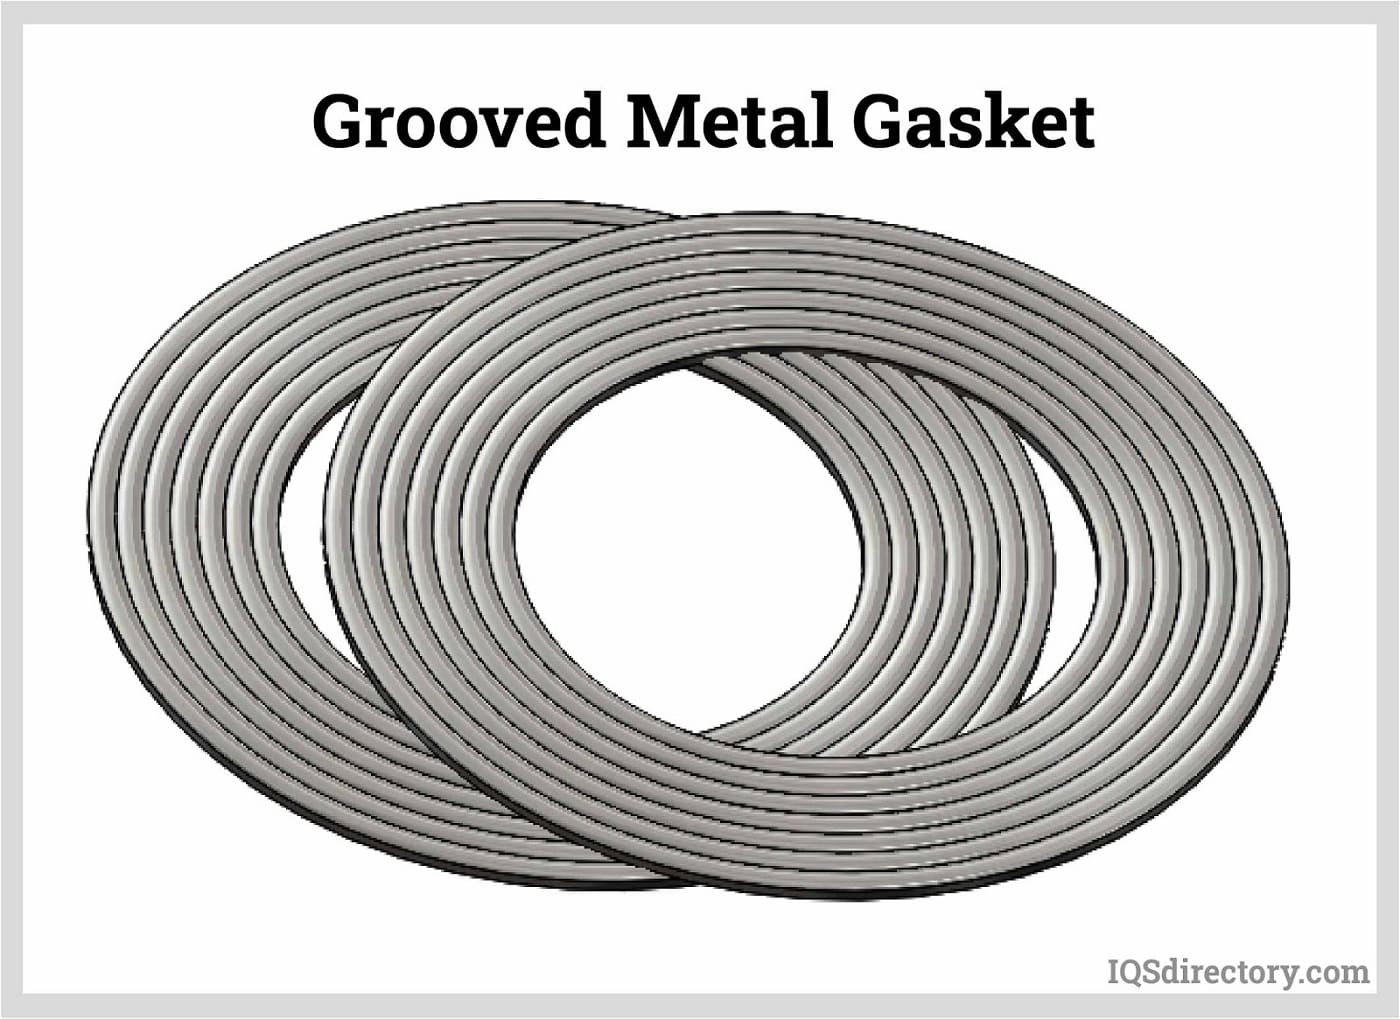 Grooved Metal Gasket